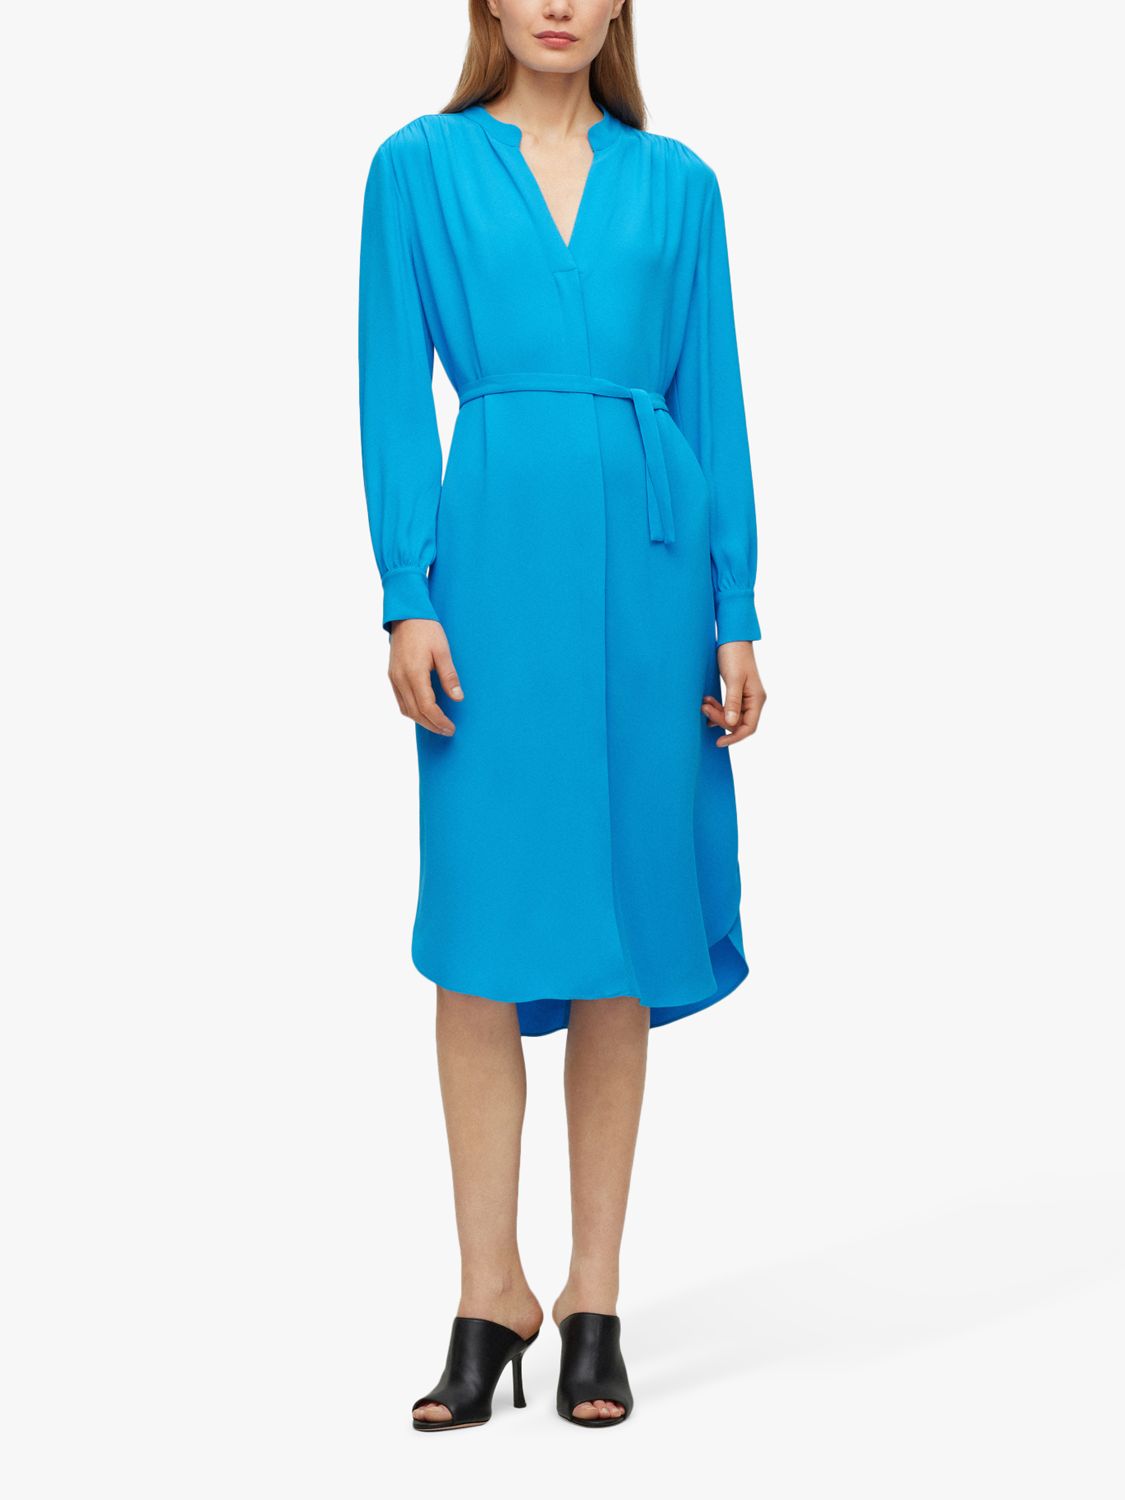 HUGO BOSS Dibanorah Plain Dress, Bright Blue at John Lewis & Partners